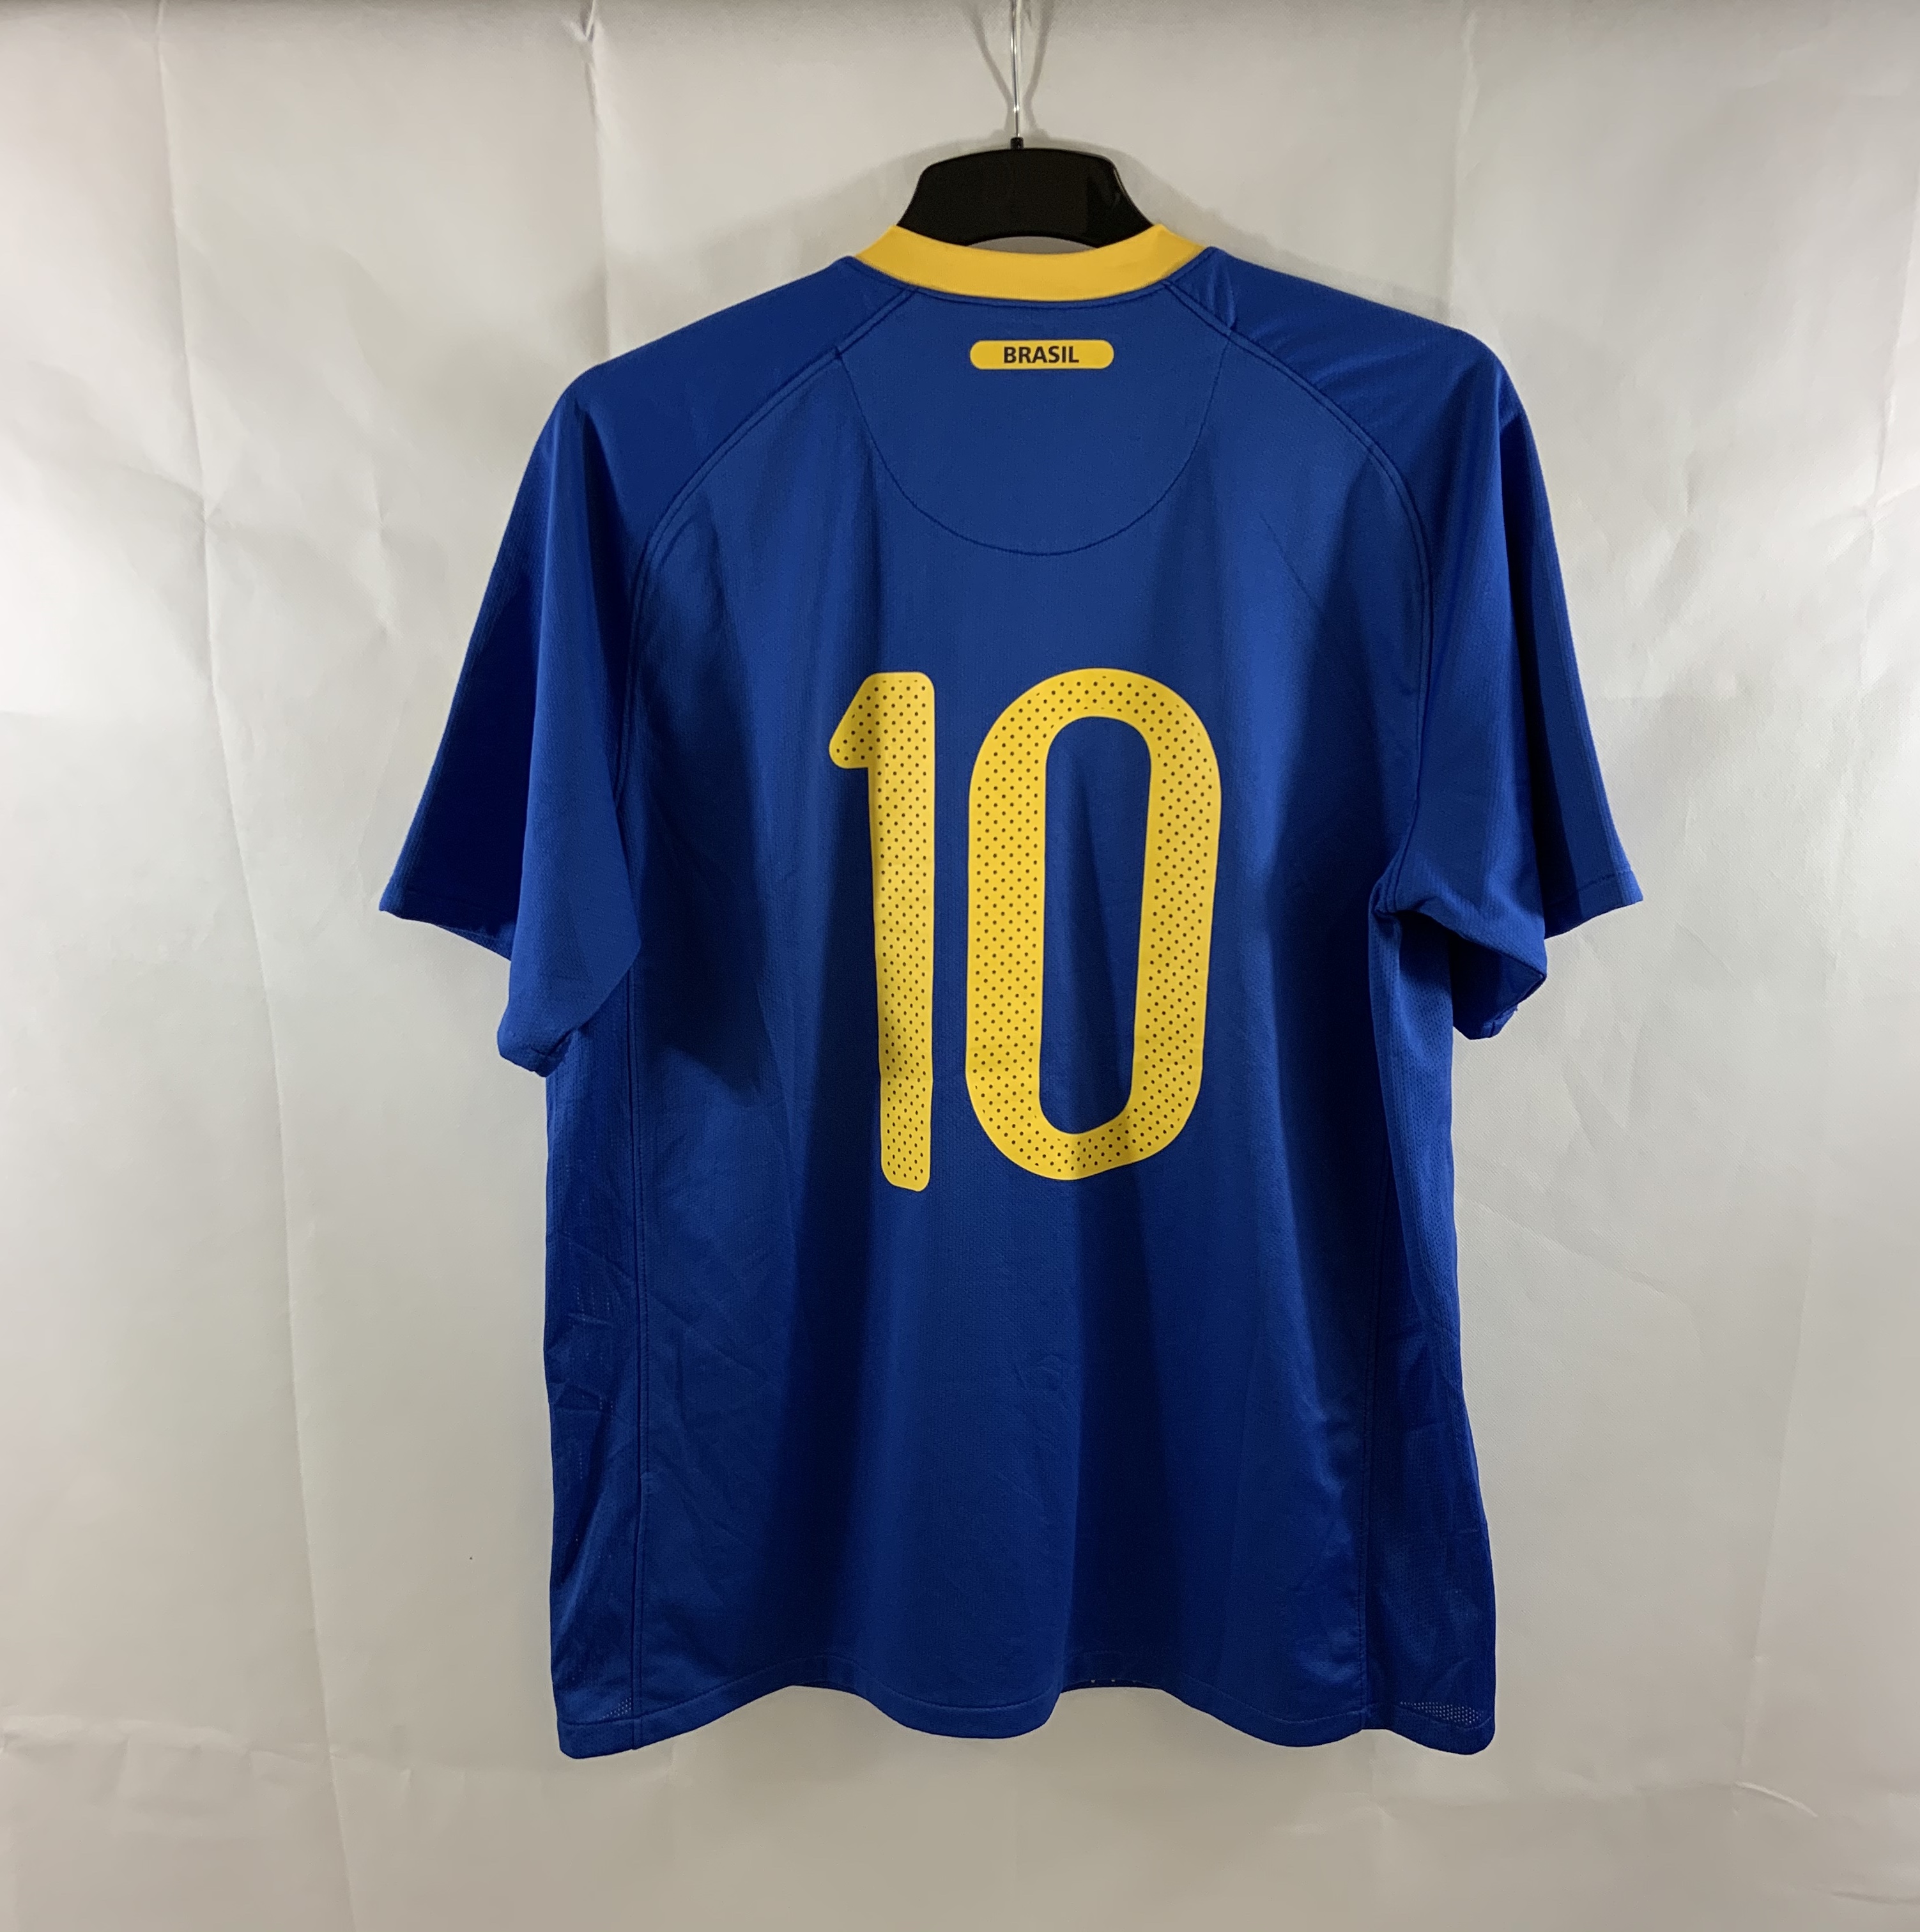 Brazil Kaka 10 Away Football Shirt 2010/11 Adults Large Nike C583 ...